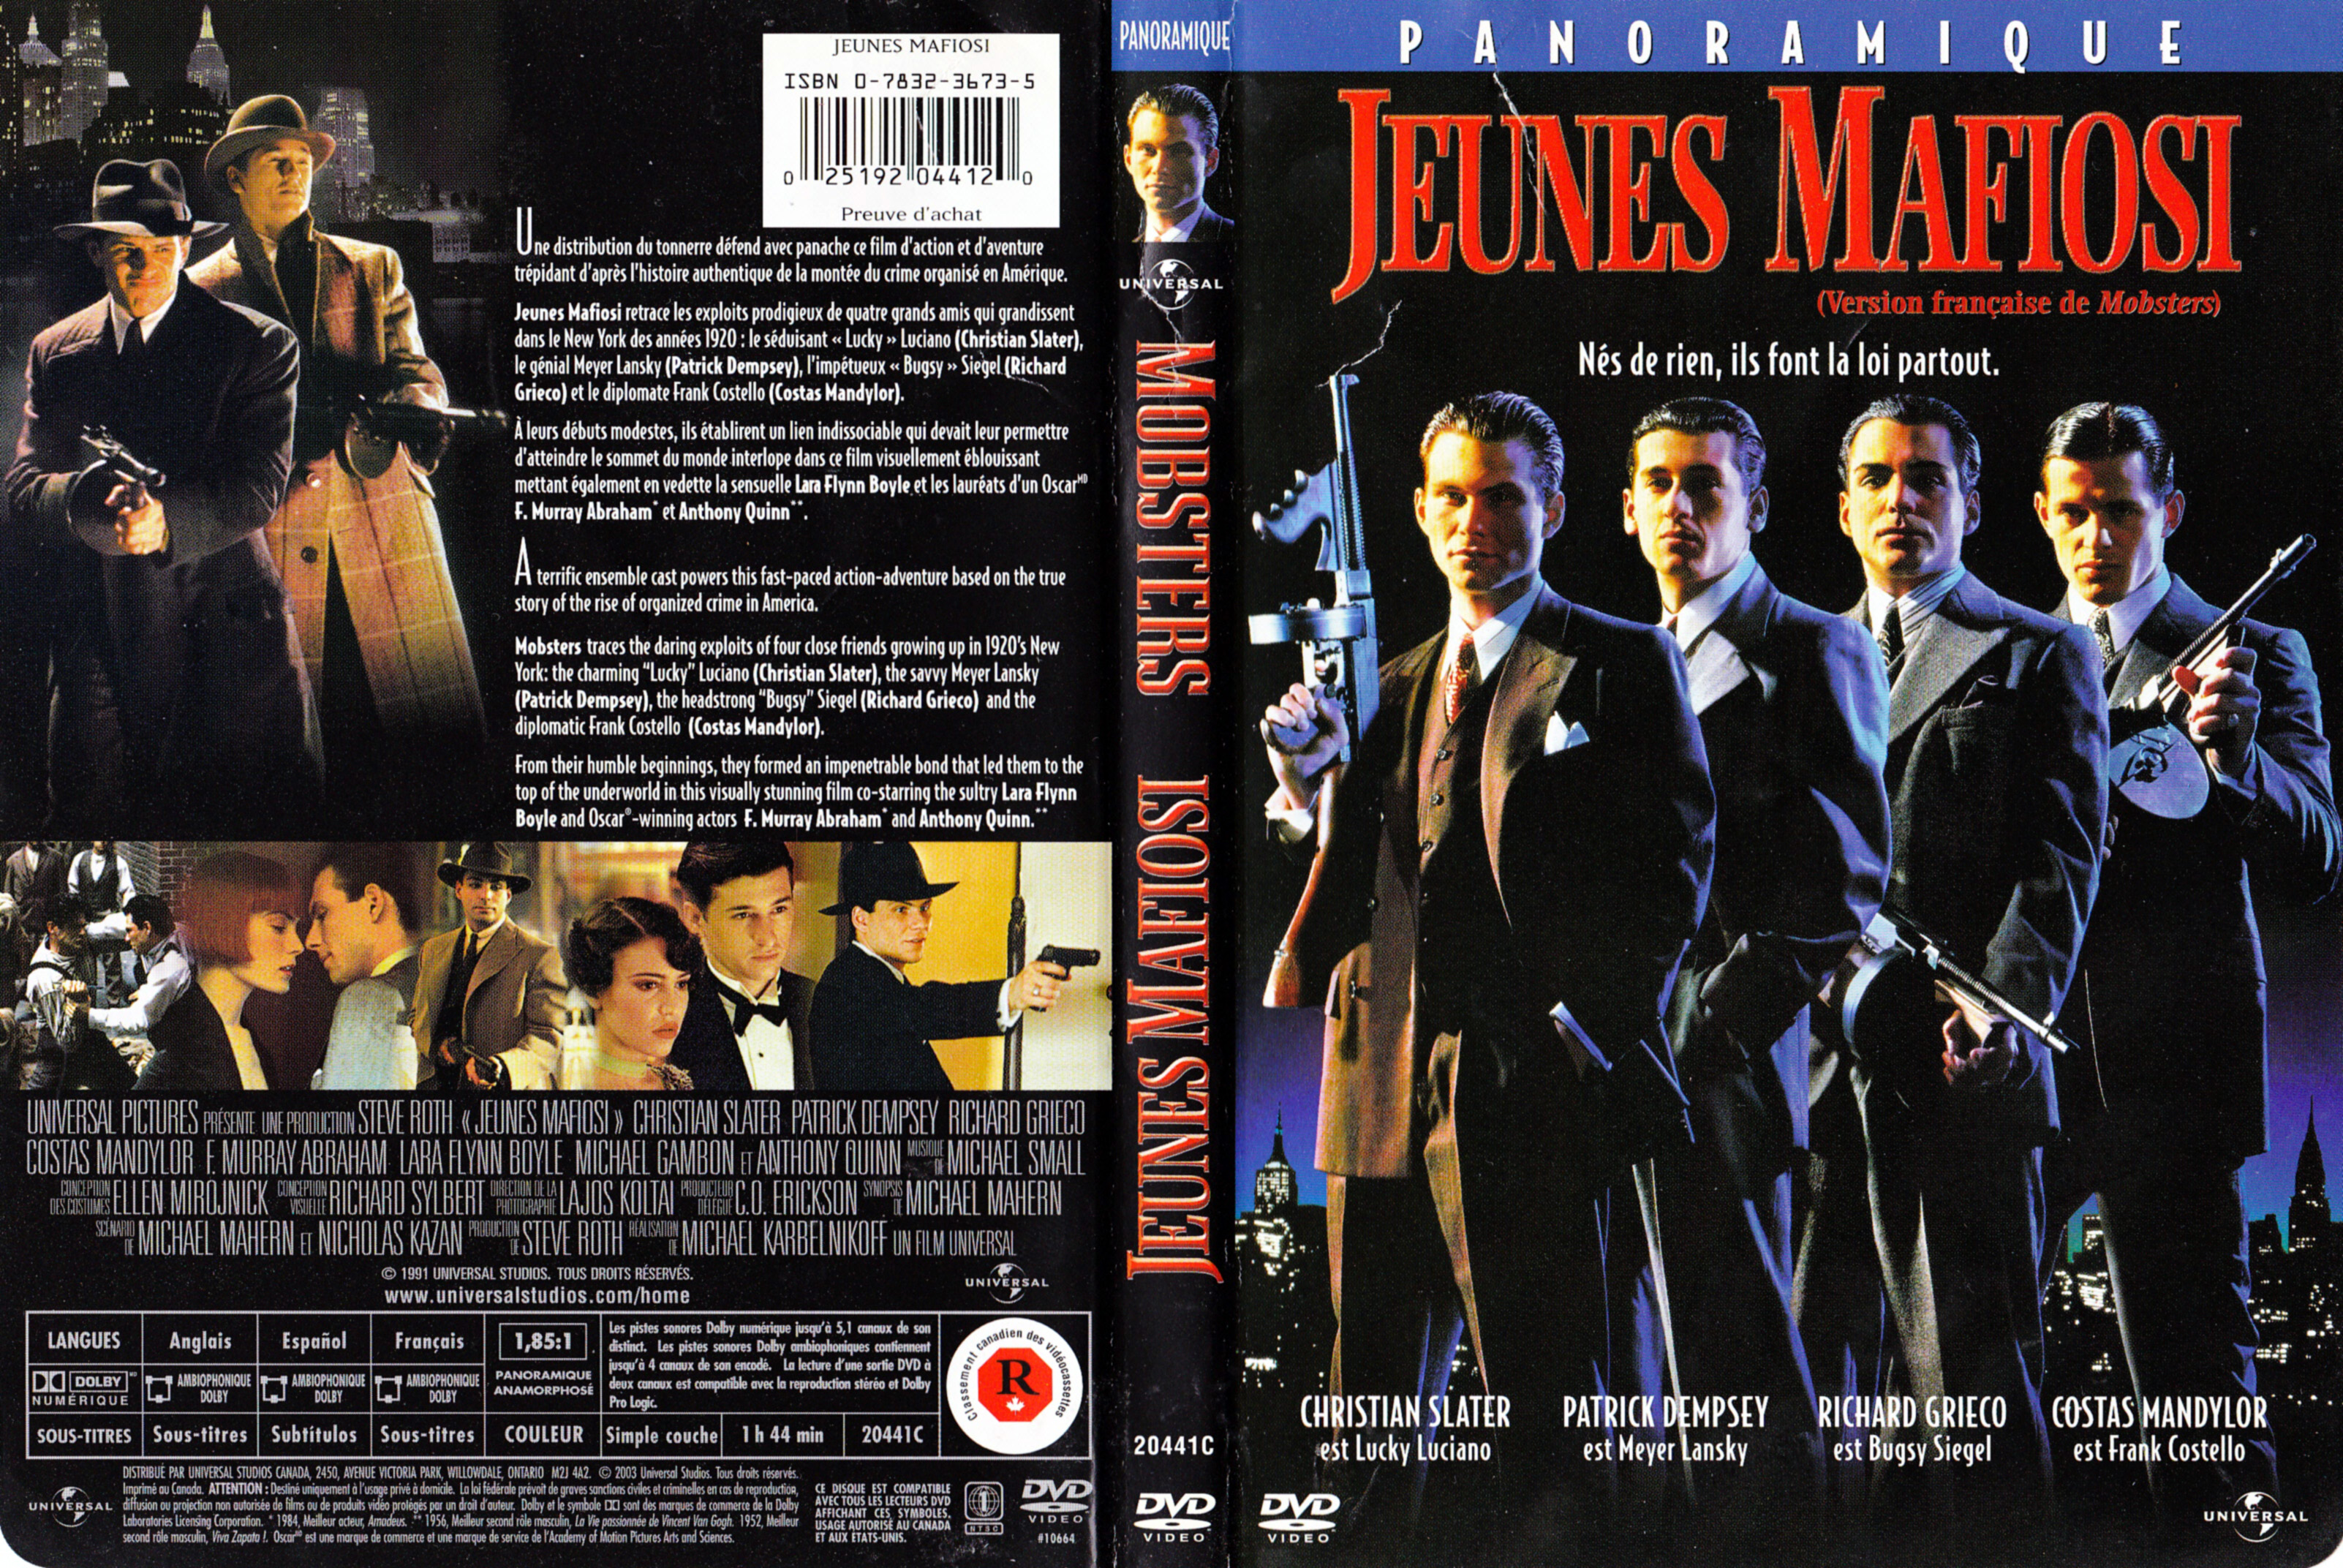 Jaquette DVD Jeune mafiosi - Modsters (Canadienne)